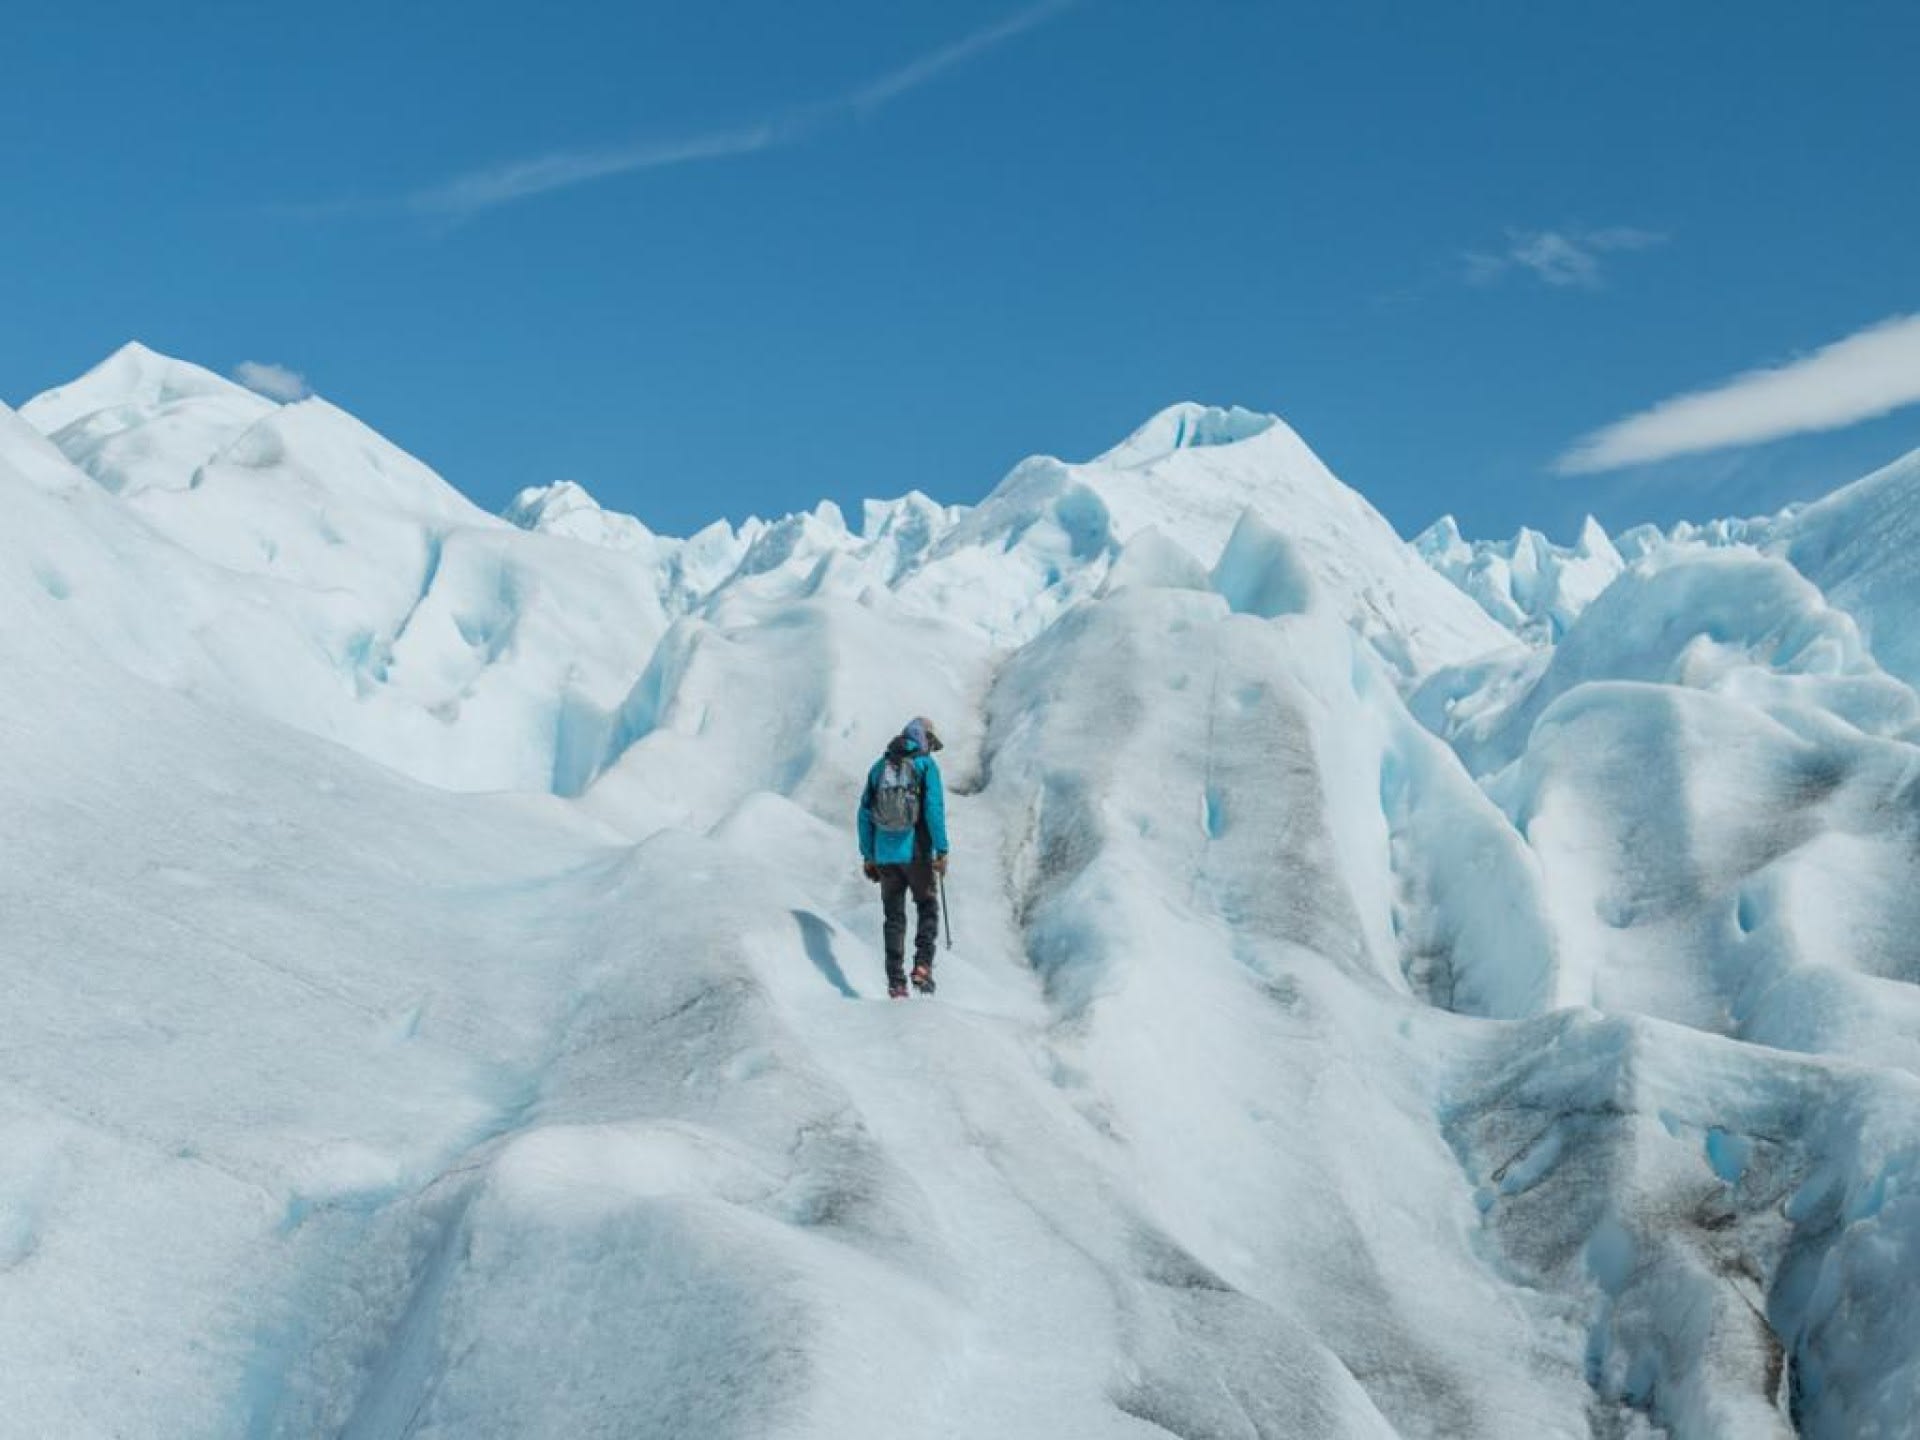 Minitrekking on Perito Moreno Glacier